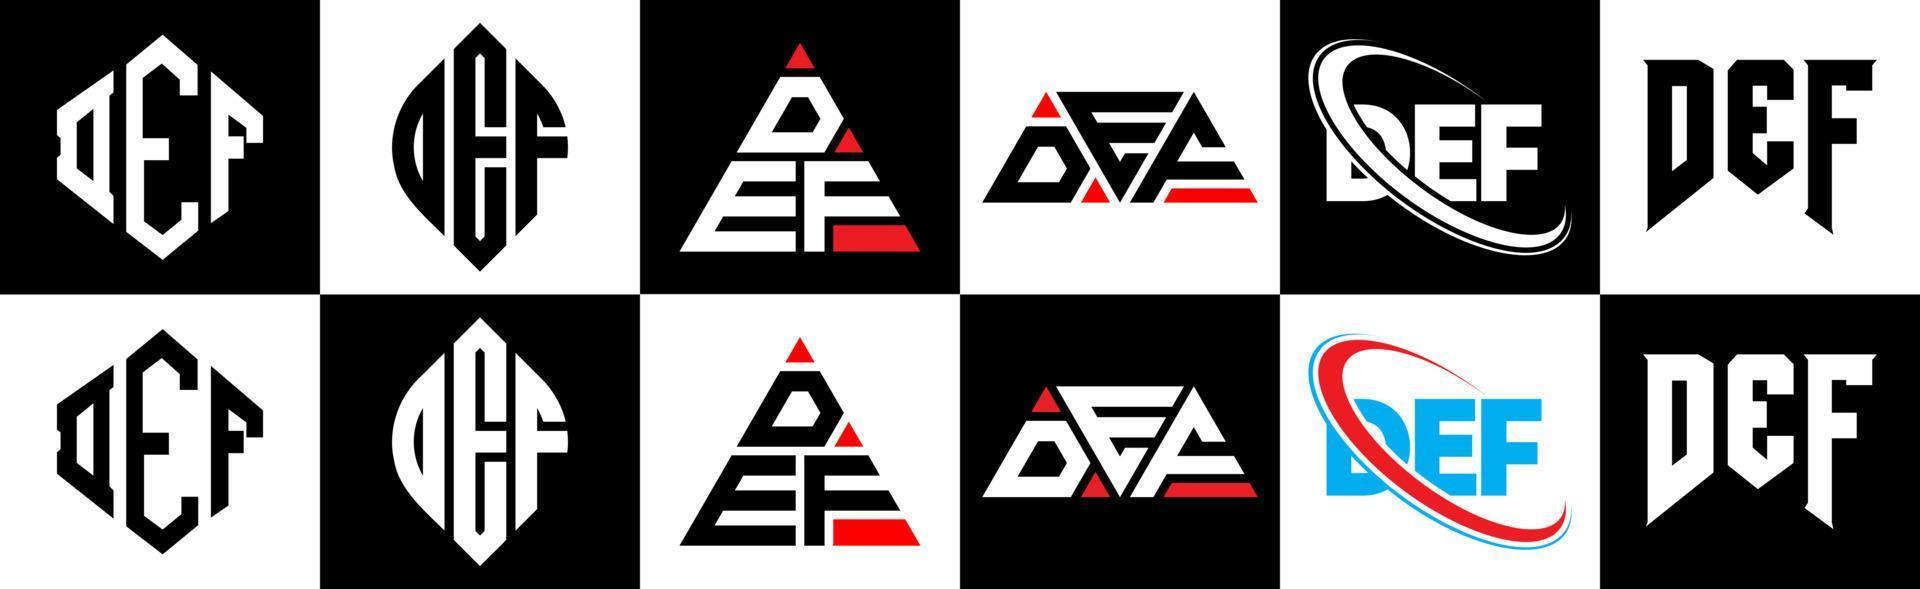 def-Buchstaben-Logo-Design in sechs Stilen. Def. Polygon, Kreis, Dreieck, Sechseck, flacher und einfacher Stil mit schwarz-weißem Buchstabenlogo in einer Zeichenfläche. Def minimalistisches und klassisches Logo vektor